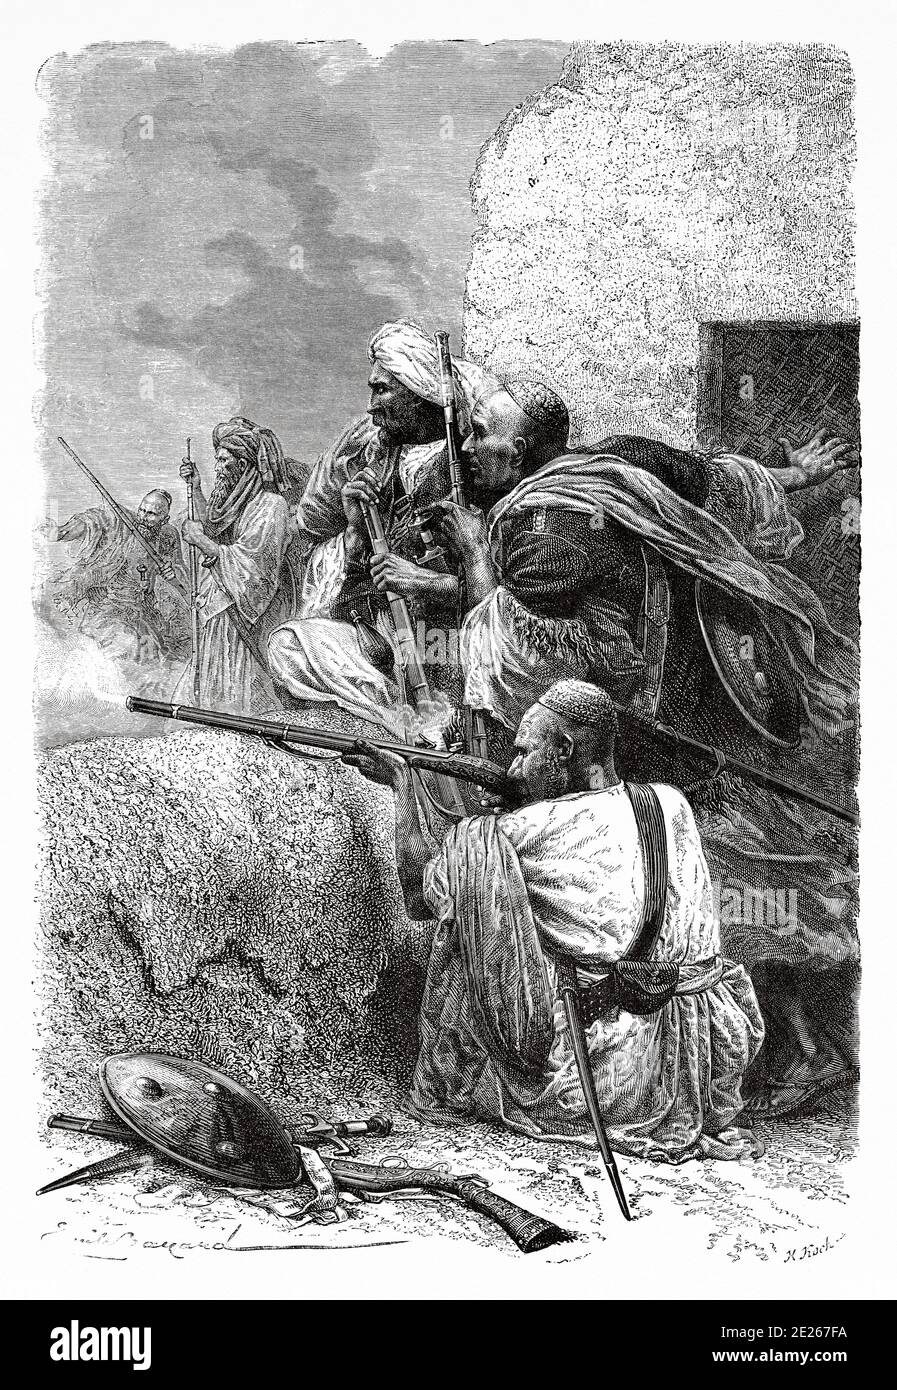 Highlanders nördliche afghanische Rebellen kämpfen die Briten in den Bergen von Hazara, Pakistan während der britischen Herrschaft, Indien. Ausflug nach Punjab und Kaschmir mit Guillaume Lejean. Alter Stich El Mundo en la Mano 1878 Stockfoto